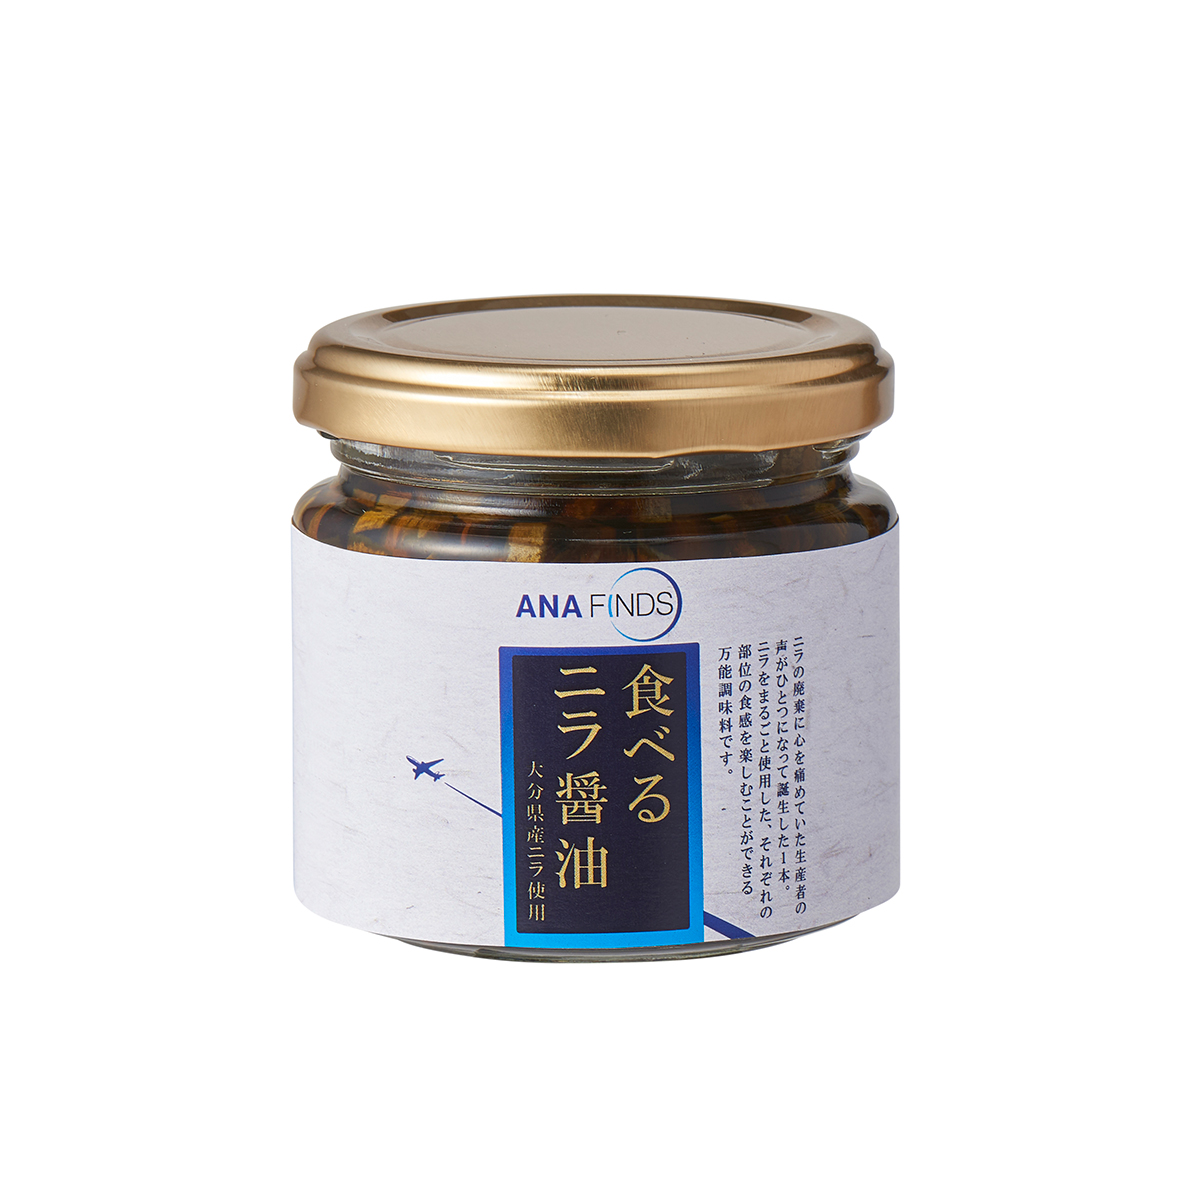 食べるニラ醤油 グルメ Gourmet ANA FINDS